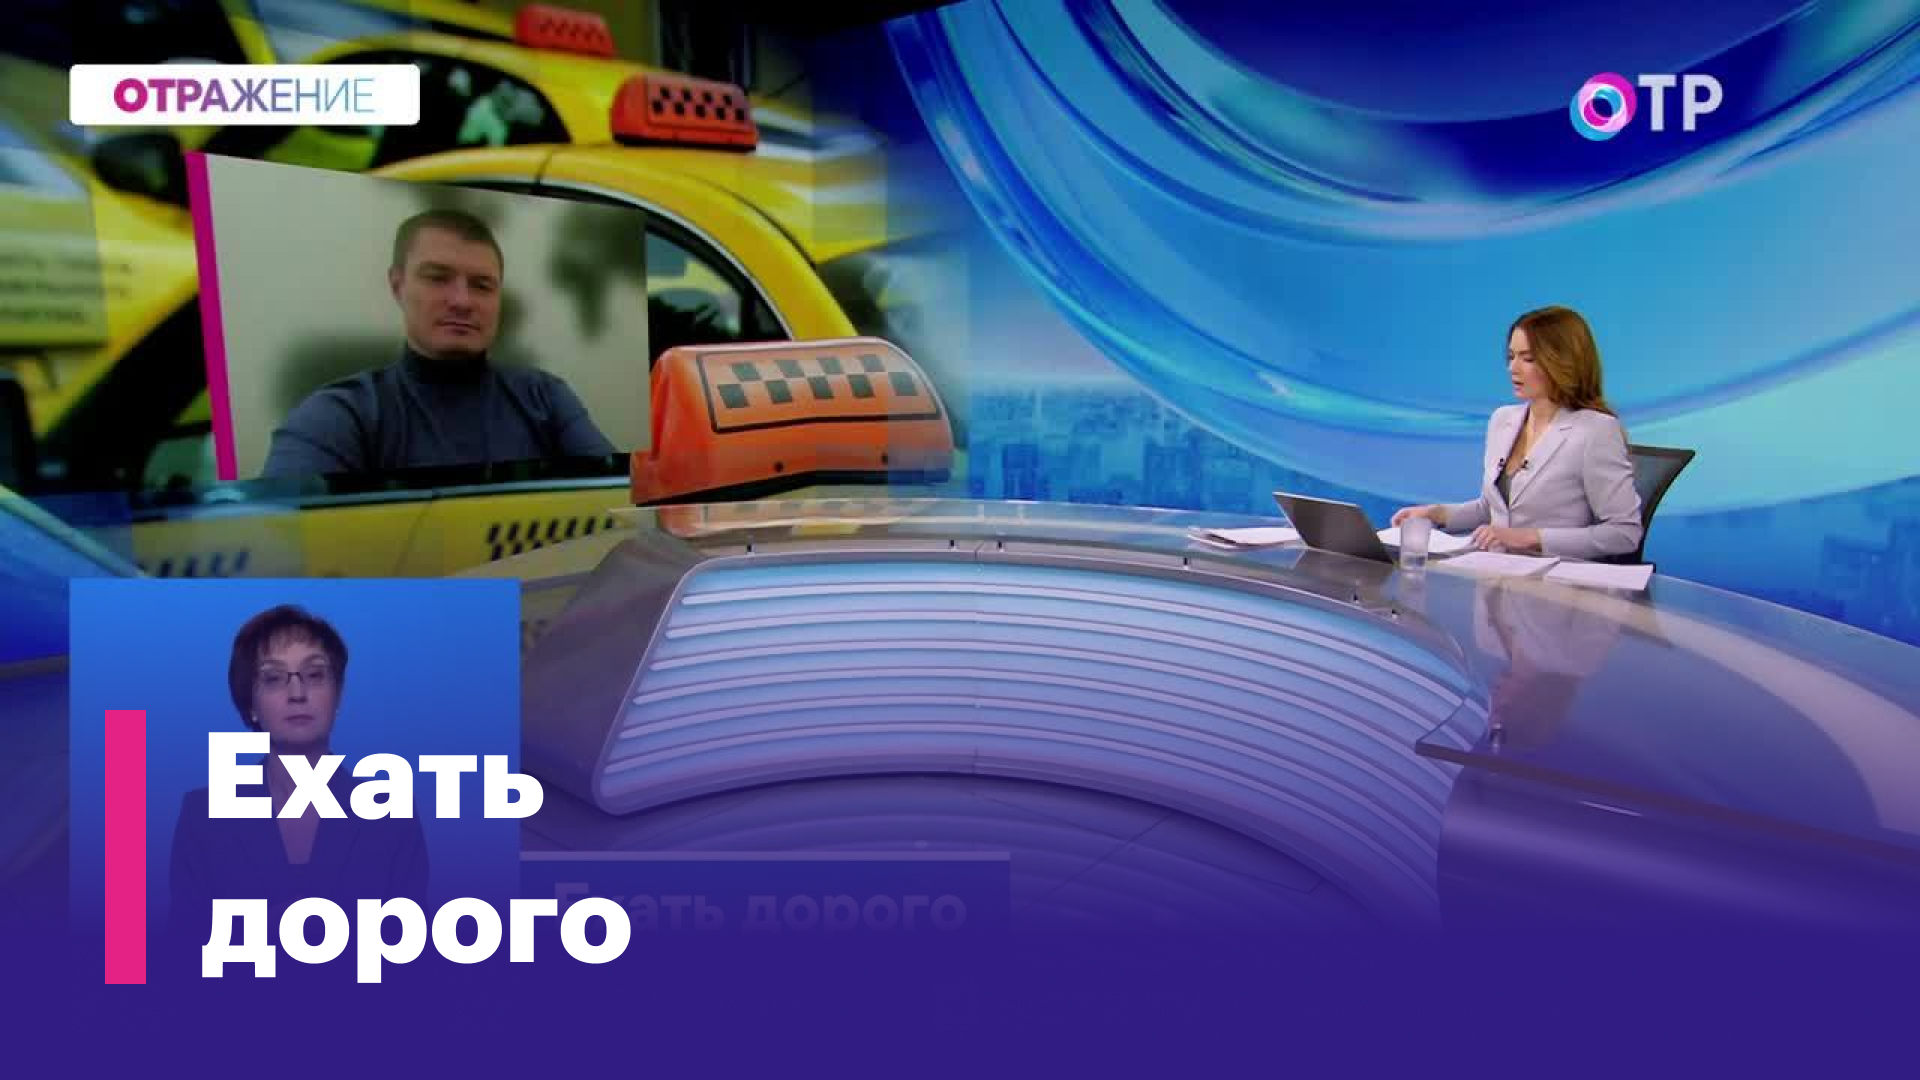 Дмитрий Коваленко: Цена на такси будет расти, я в этом уверен. У нас бензин, газ, все дорожает